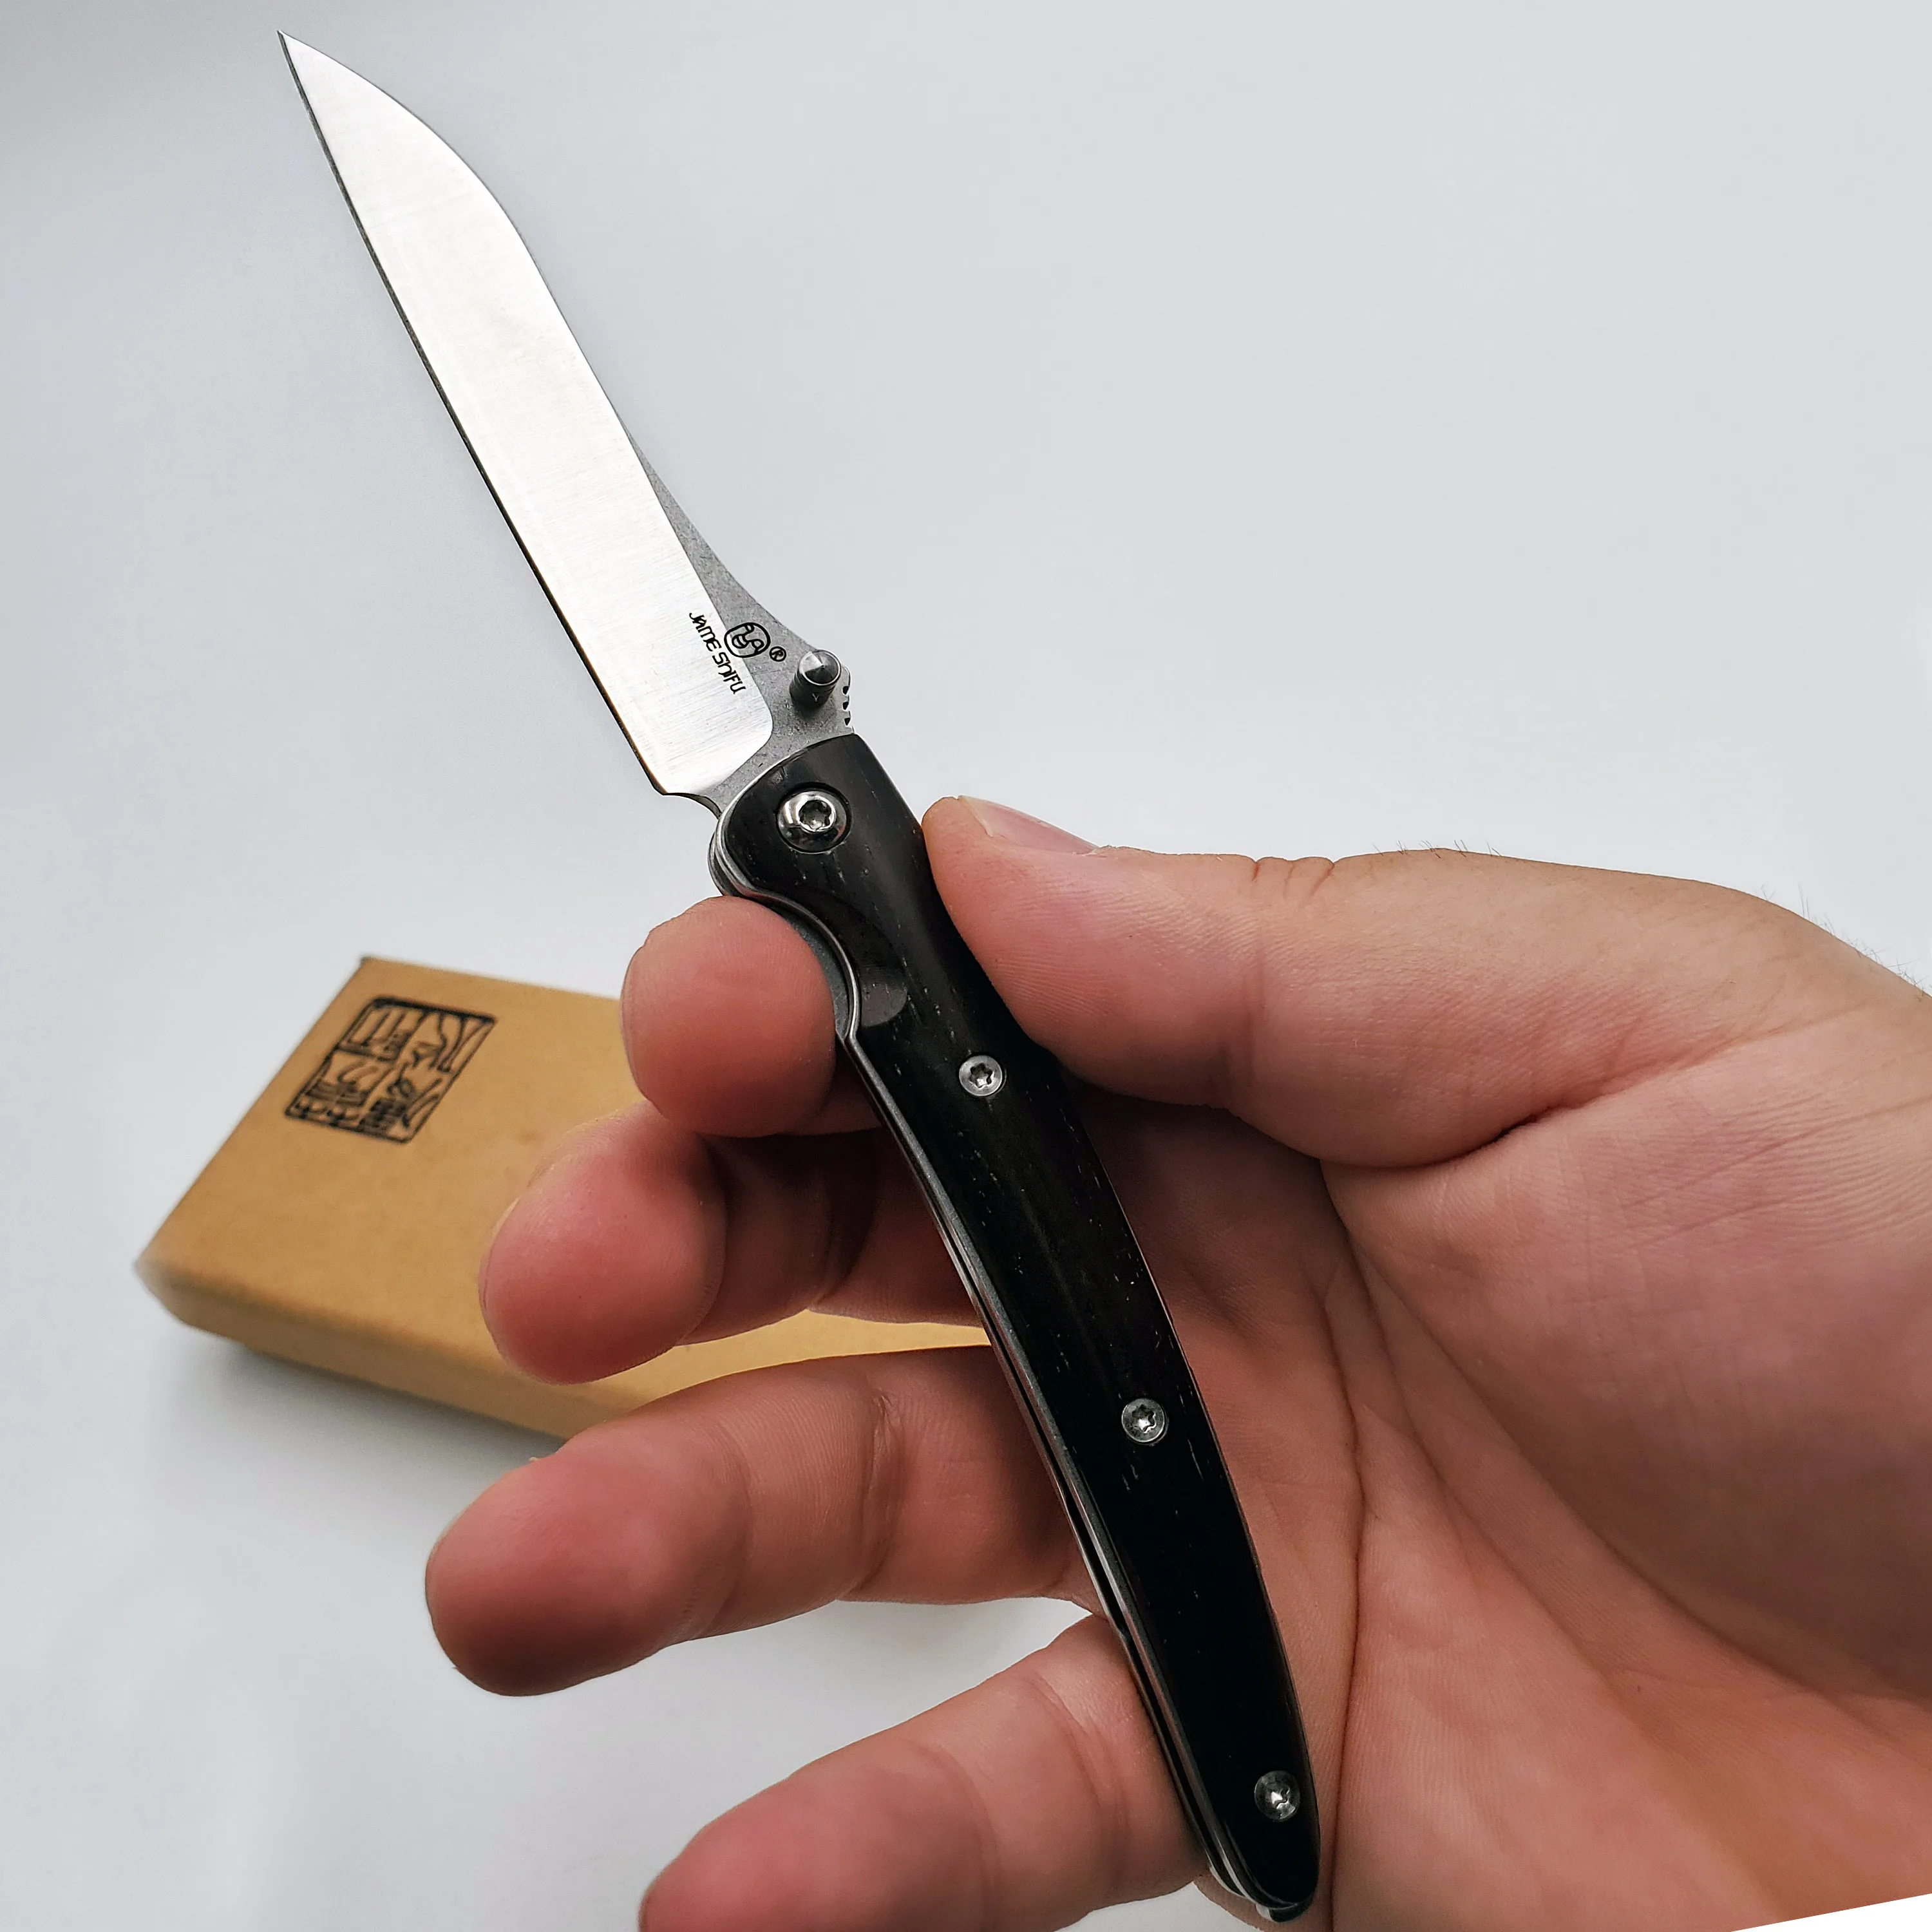 JSSQ карманный складной нож 12c27 стальное лезвие армейские тактические ножи для выживания на открытом воздухе походные охотничьи боевые ножи многофункциональные инструменты для повседневного использования